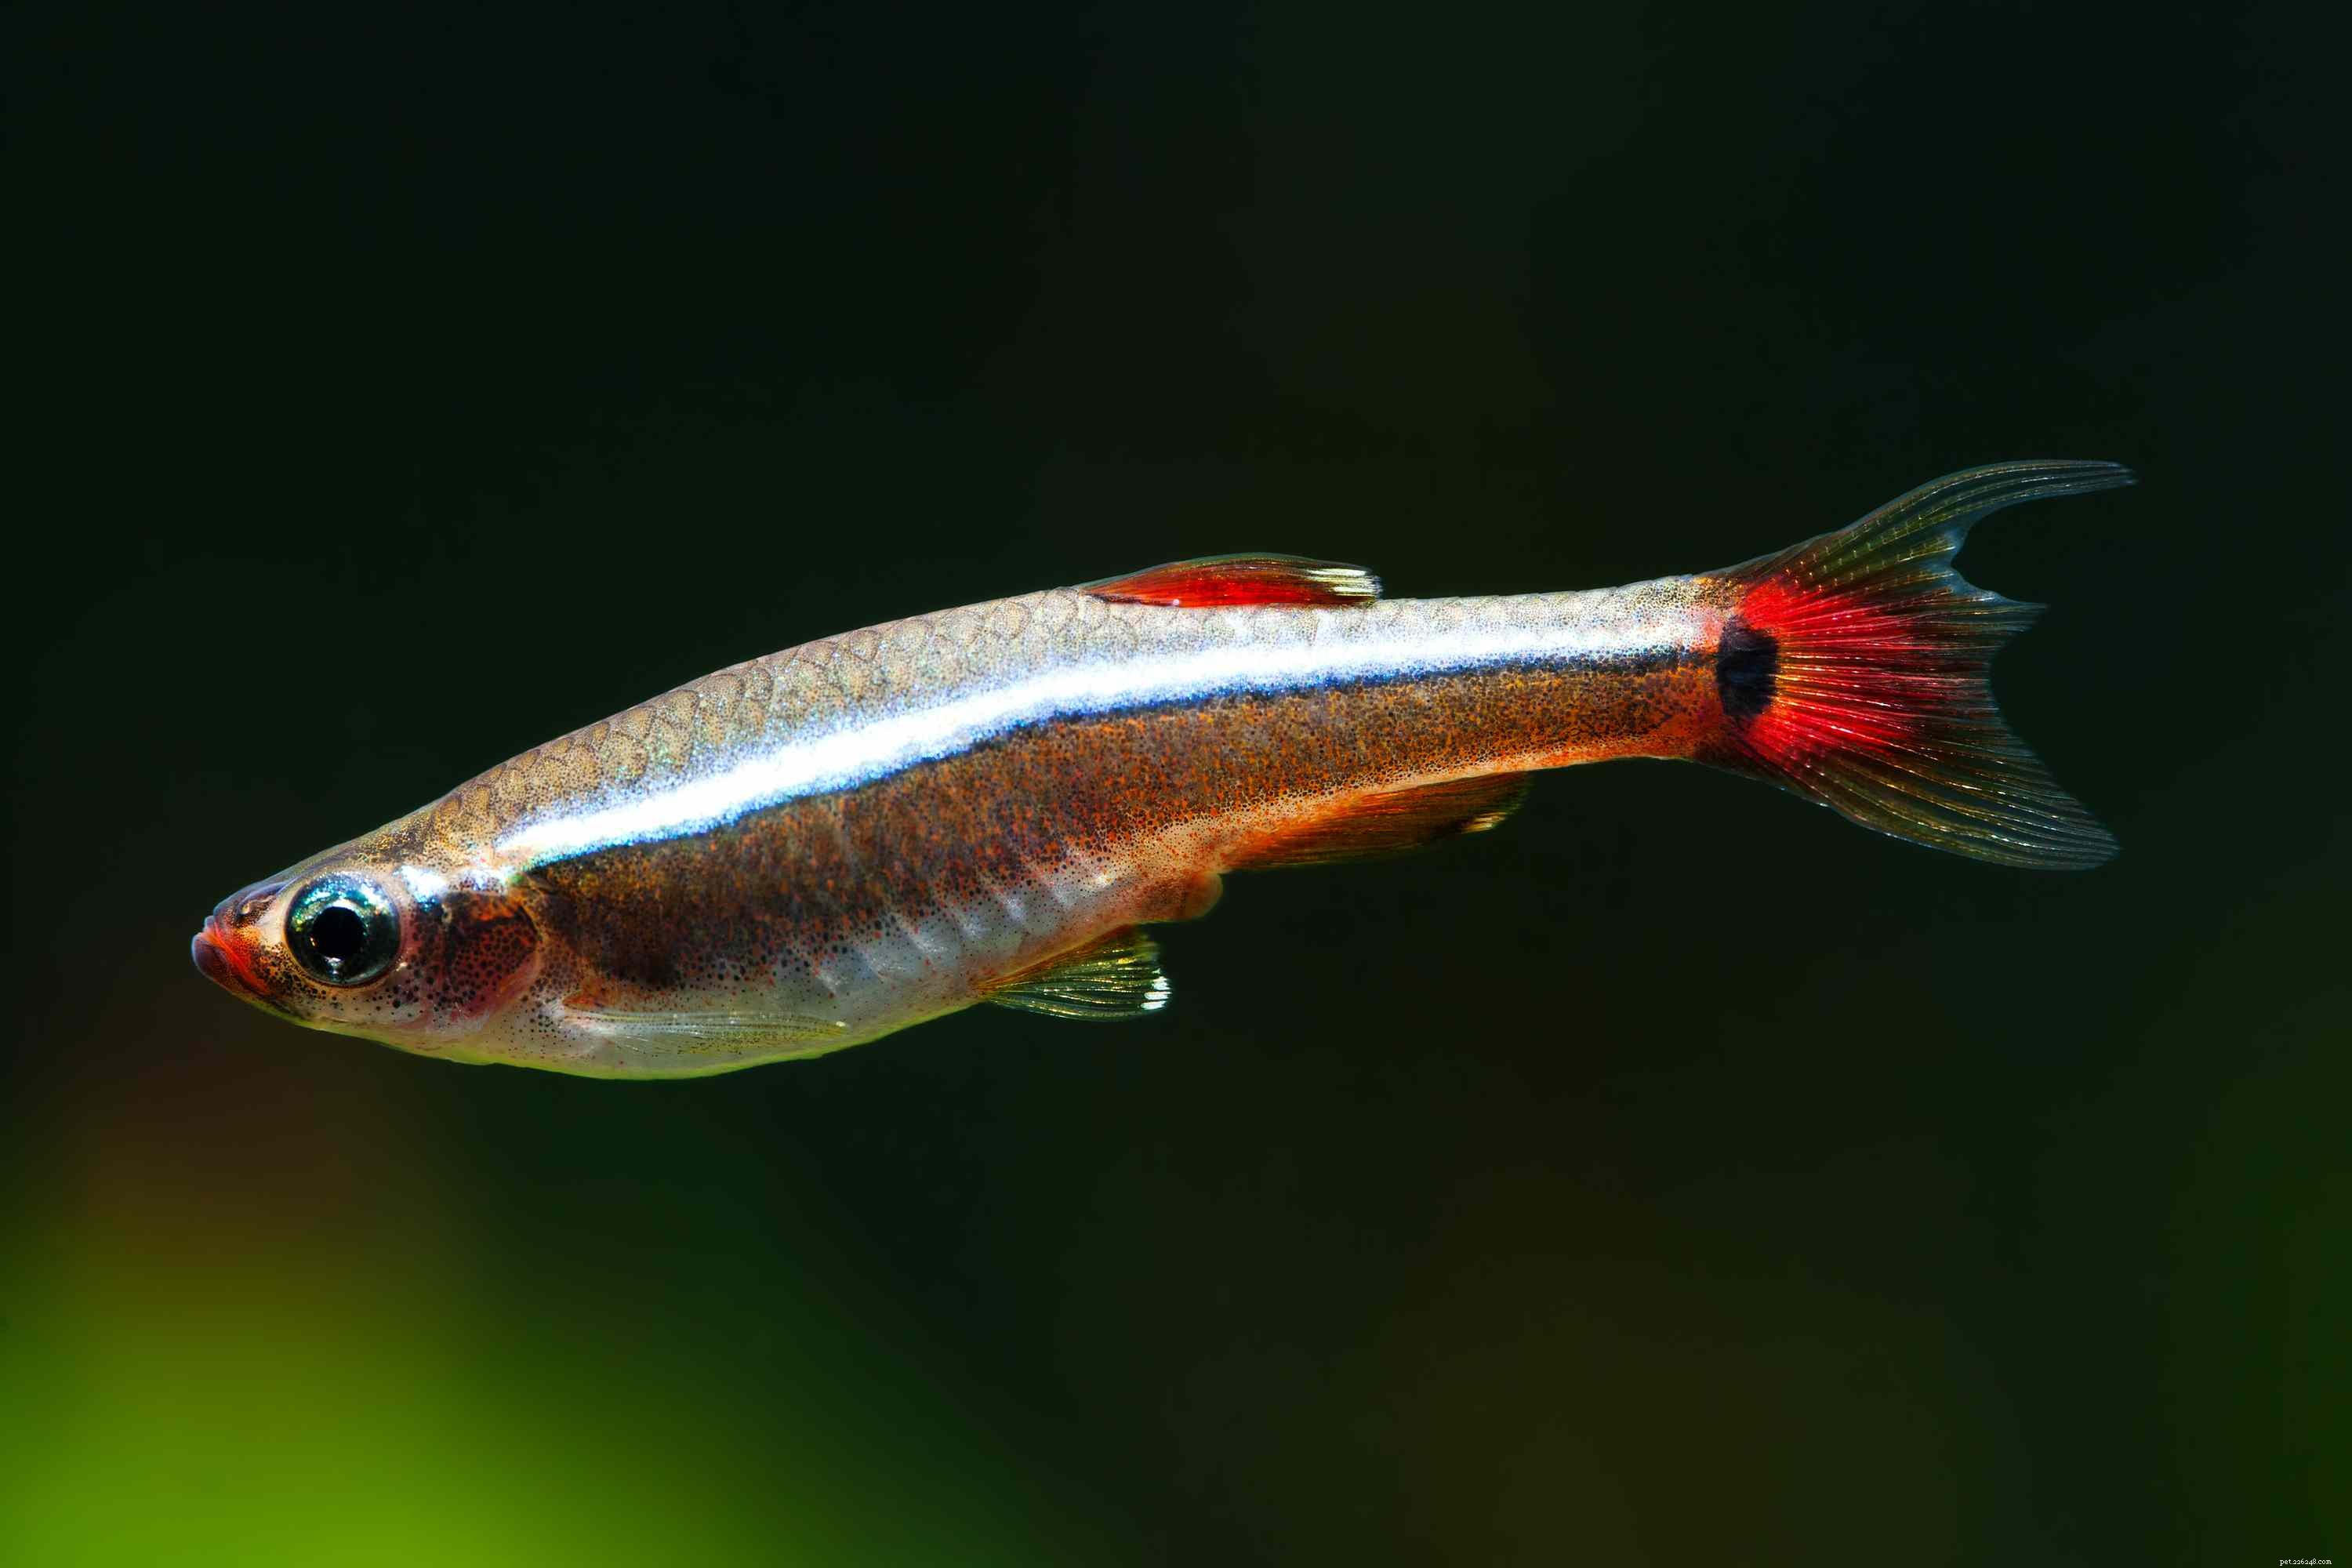 Shubunkin :Profil des espèces de poissons